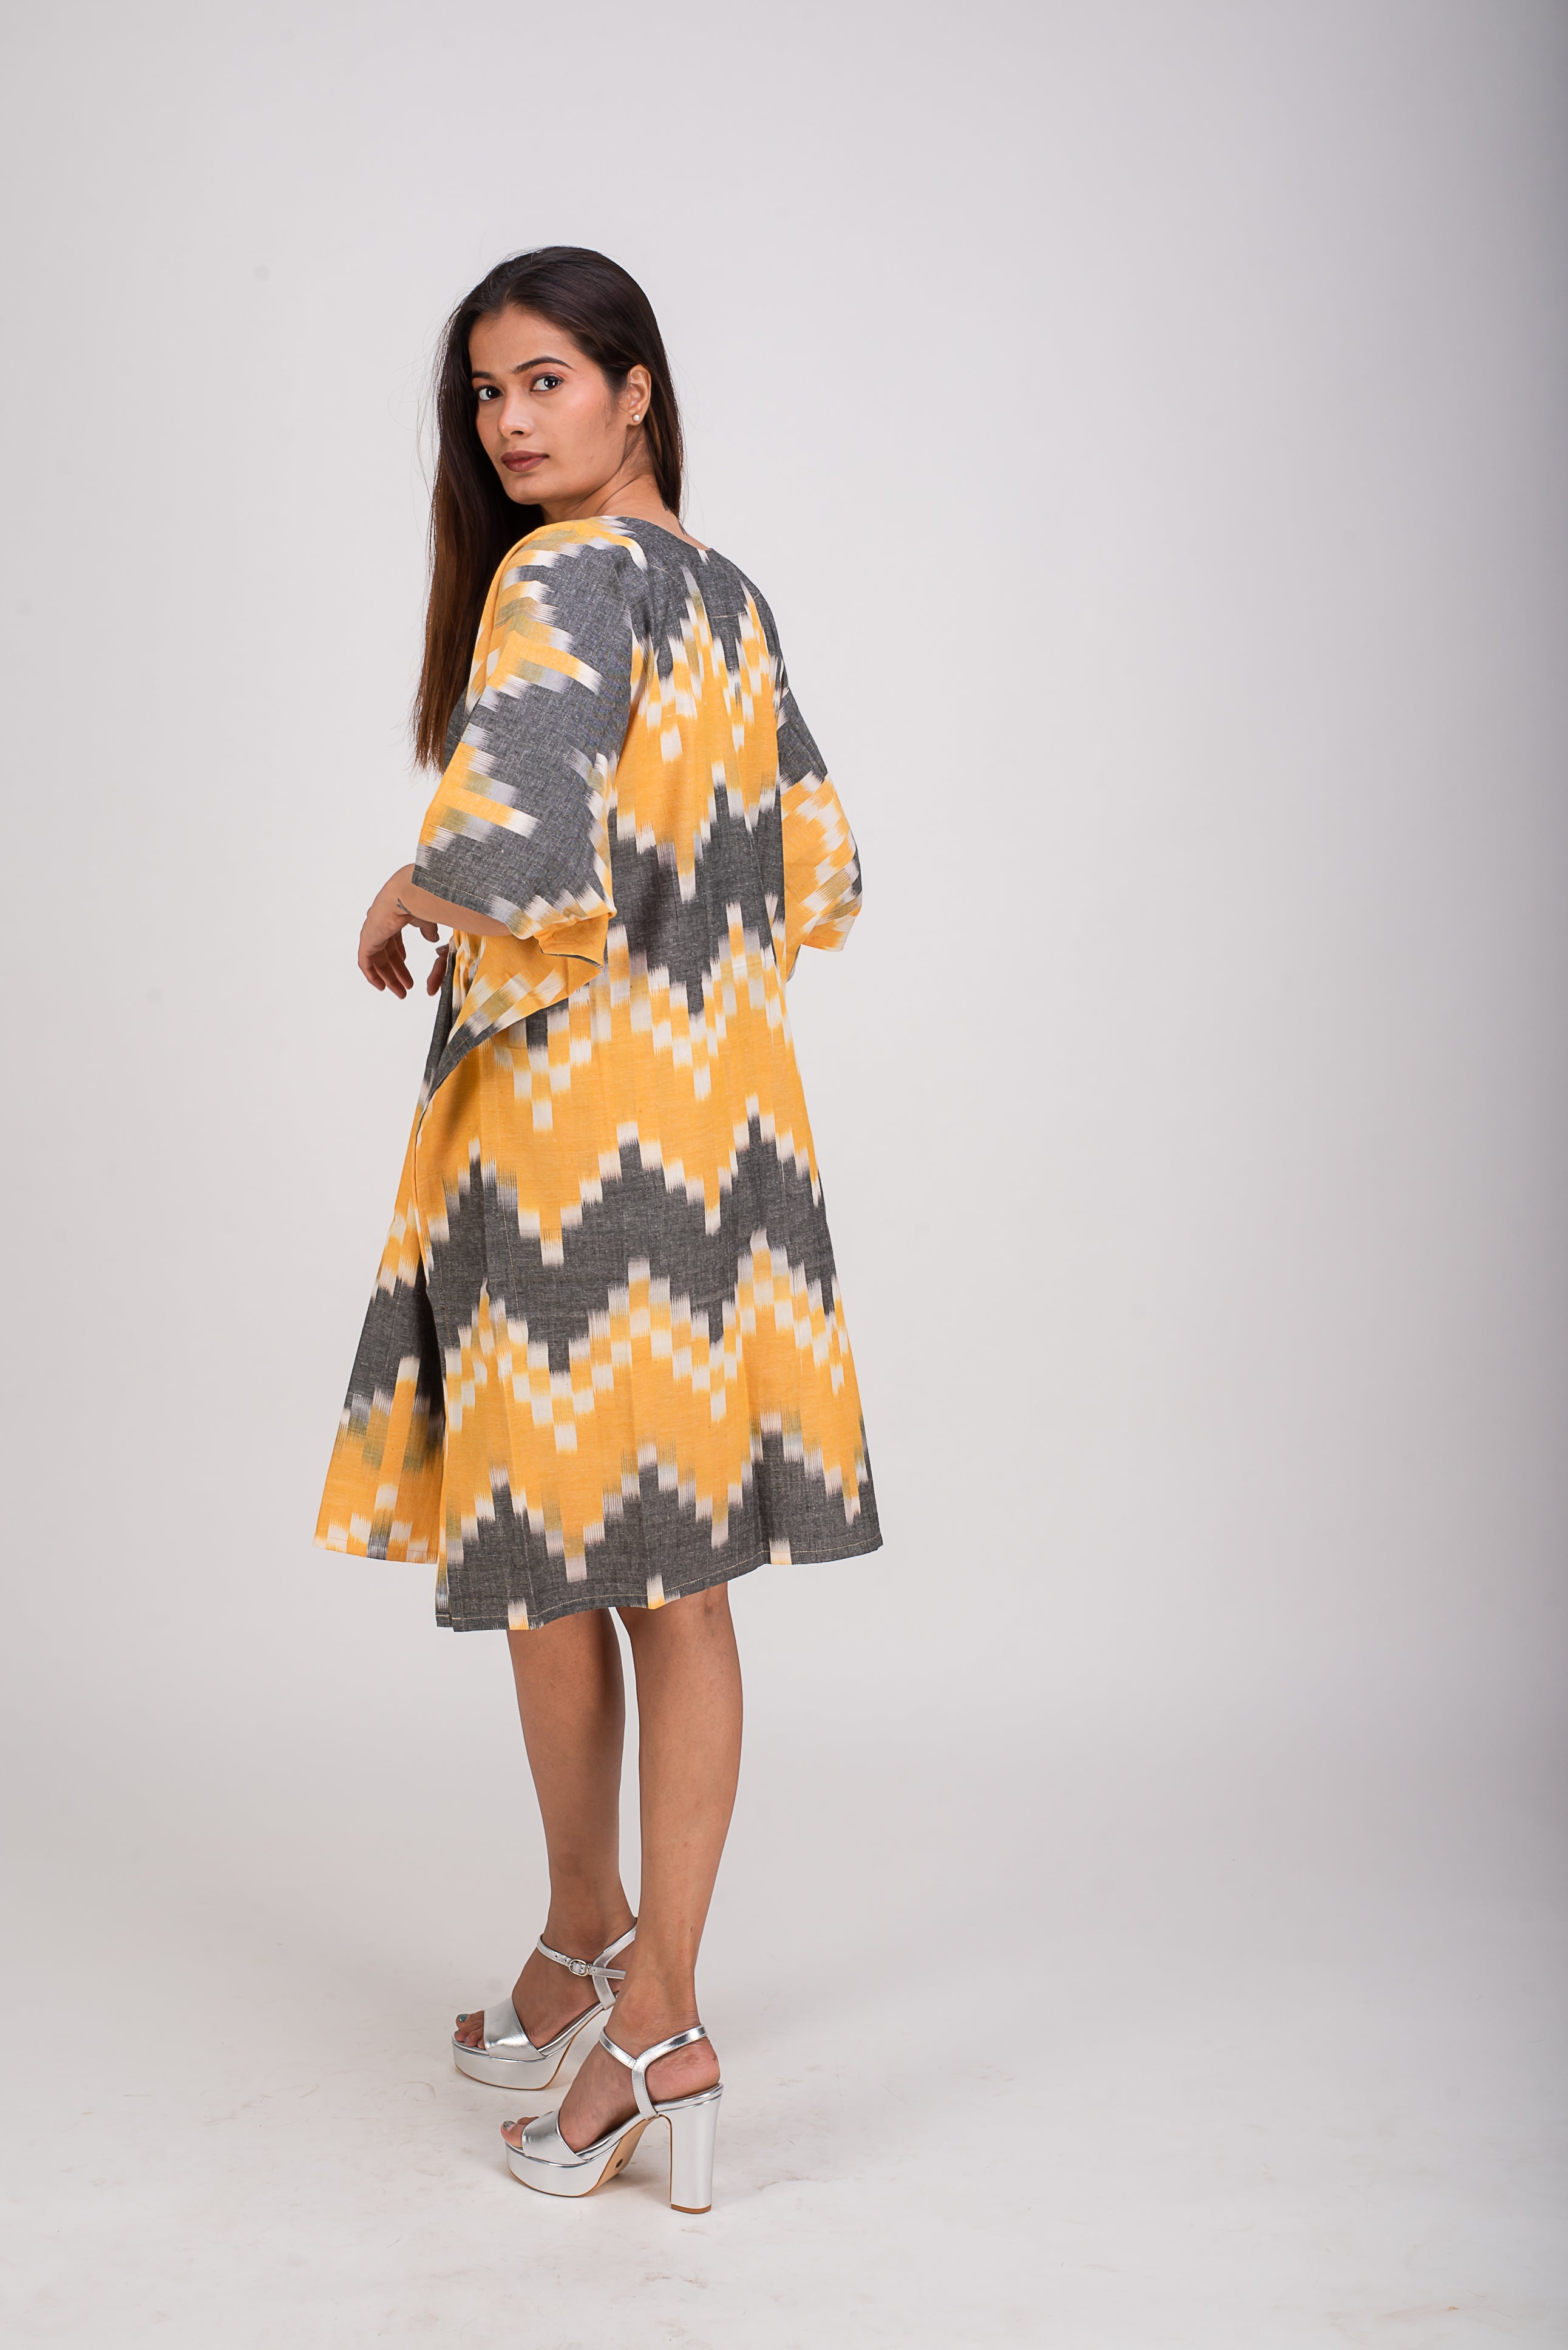 510-316 Whitelotus "Sony" Kaftan Knee Length Women's Dress